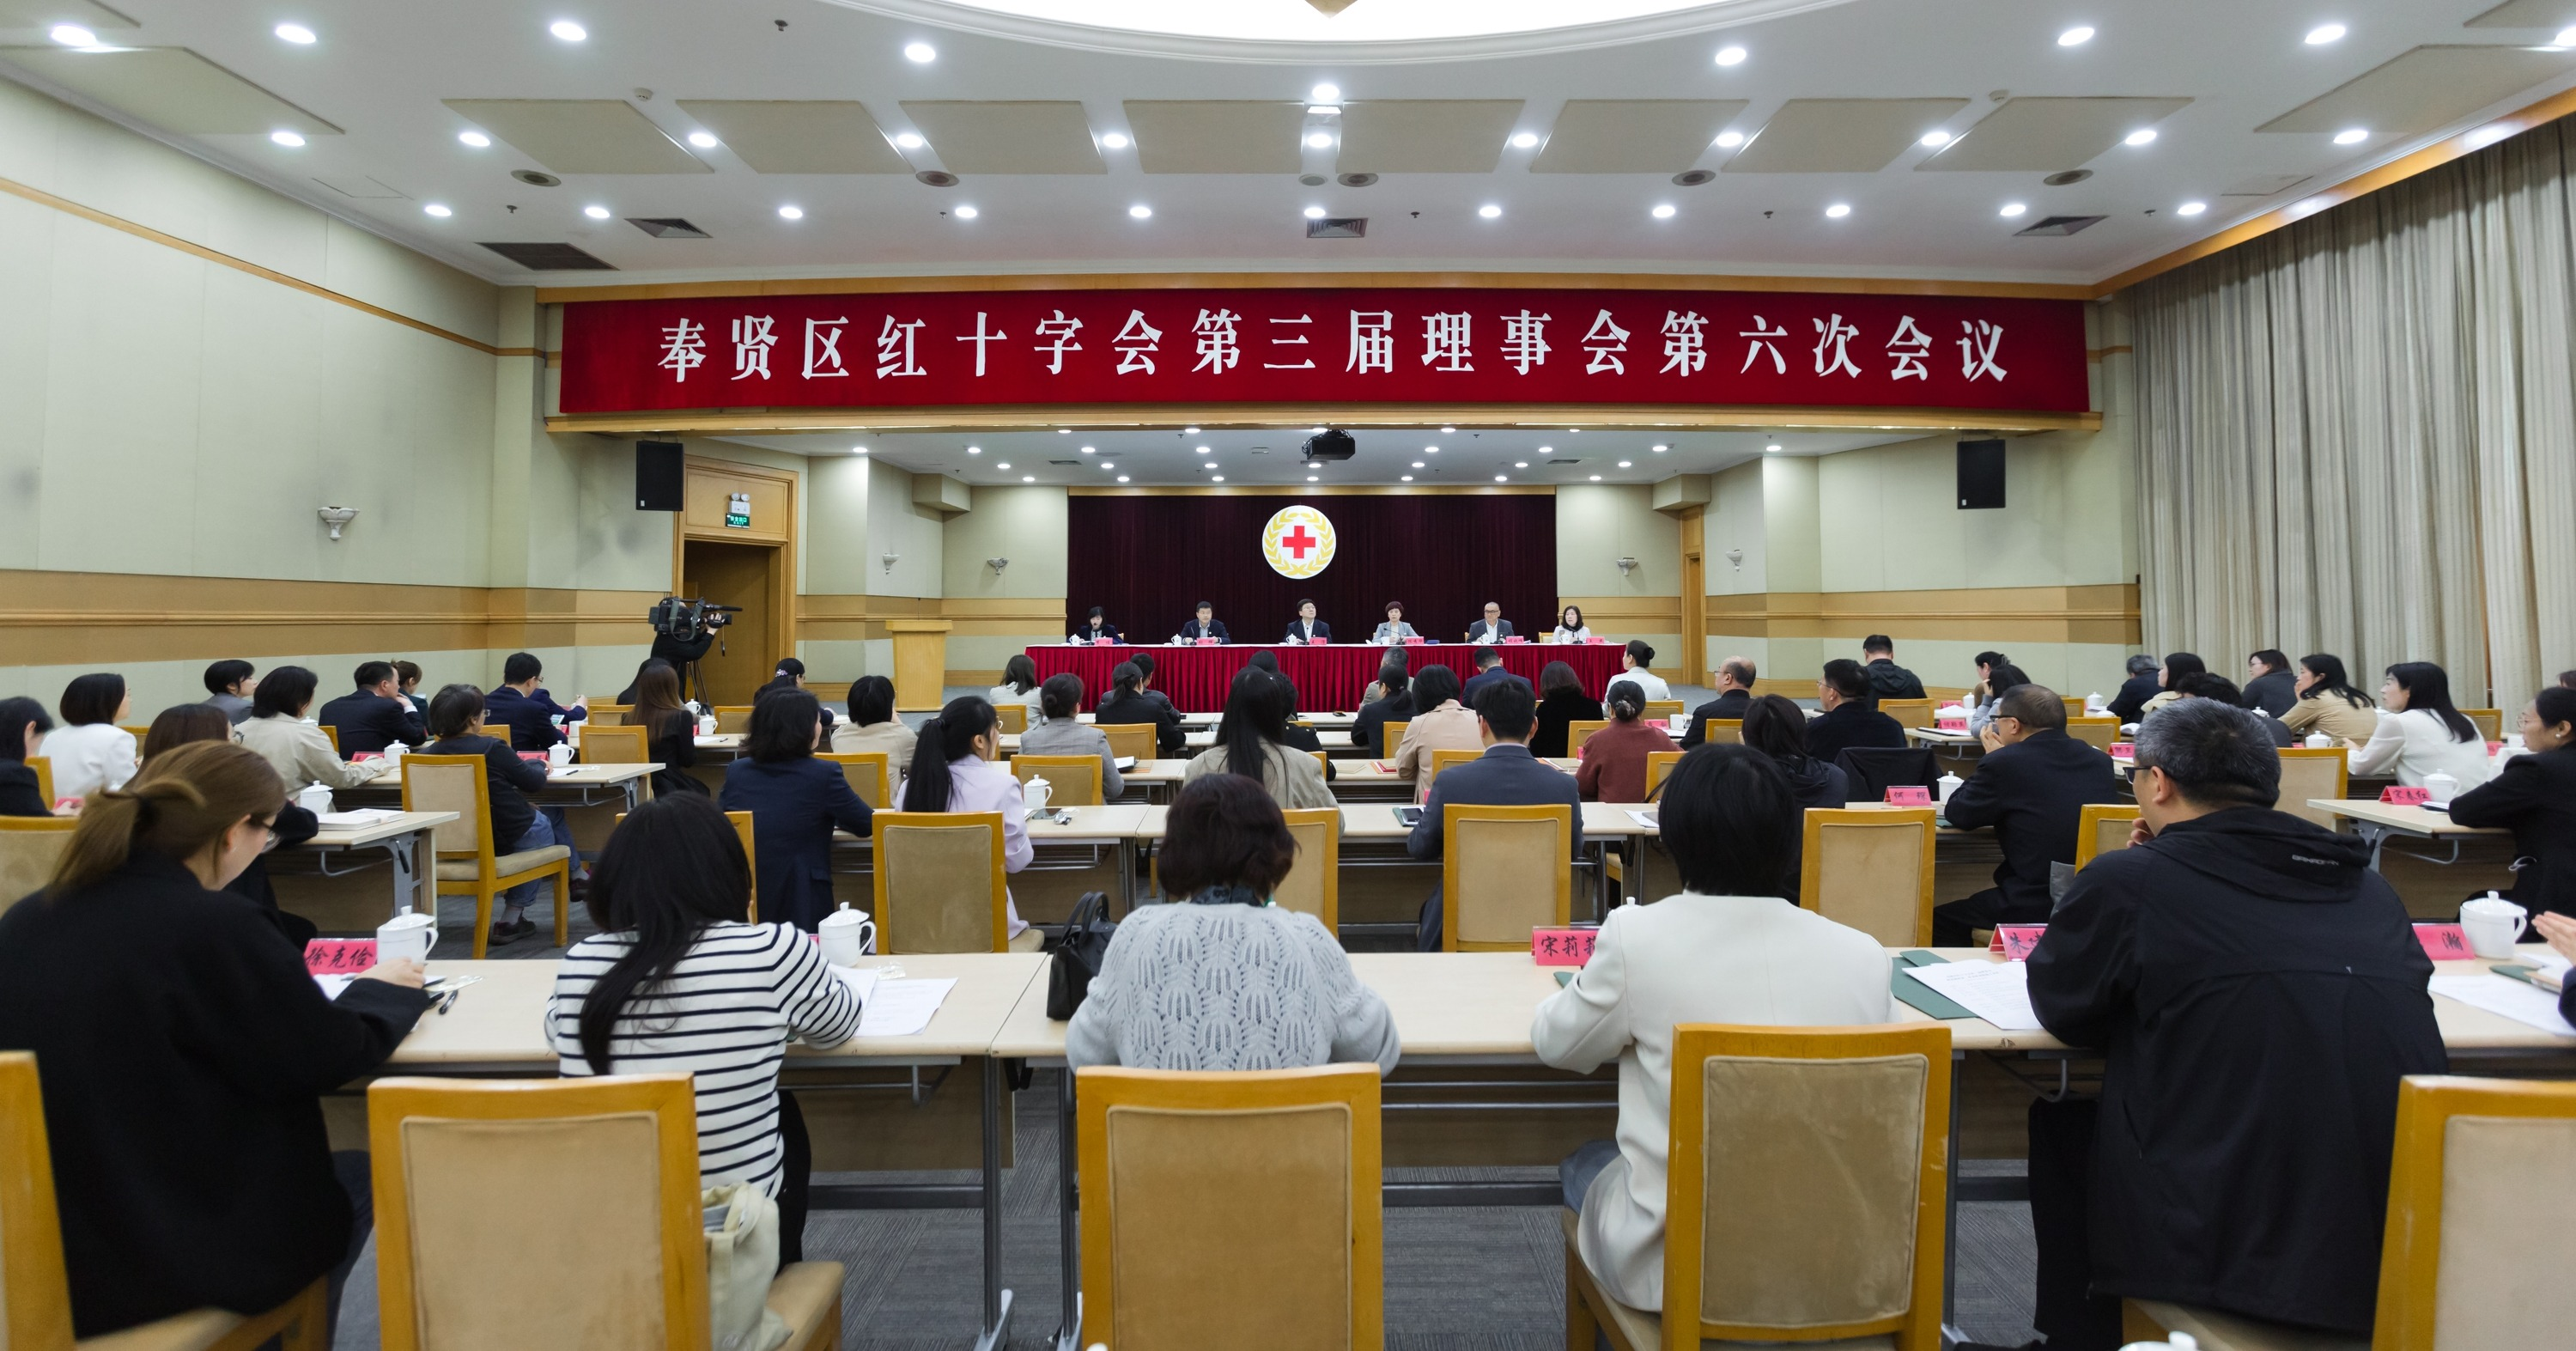 【区级新闻】奉贤区红十字会召开第三届理事会第六次会议